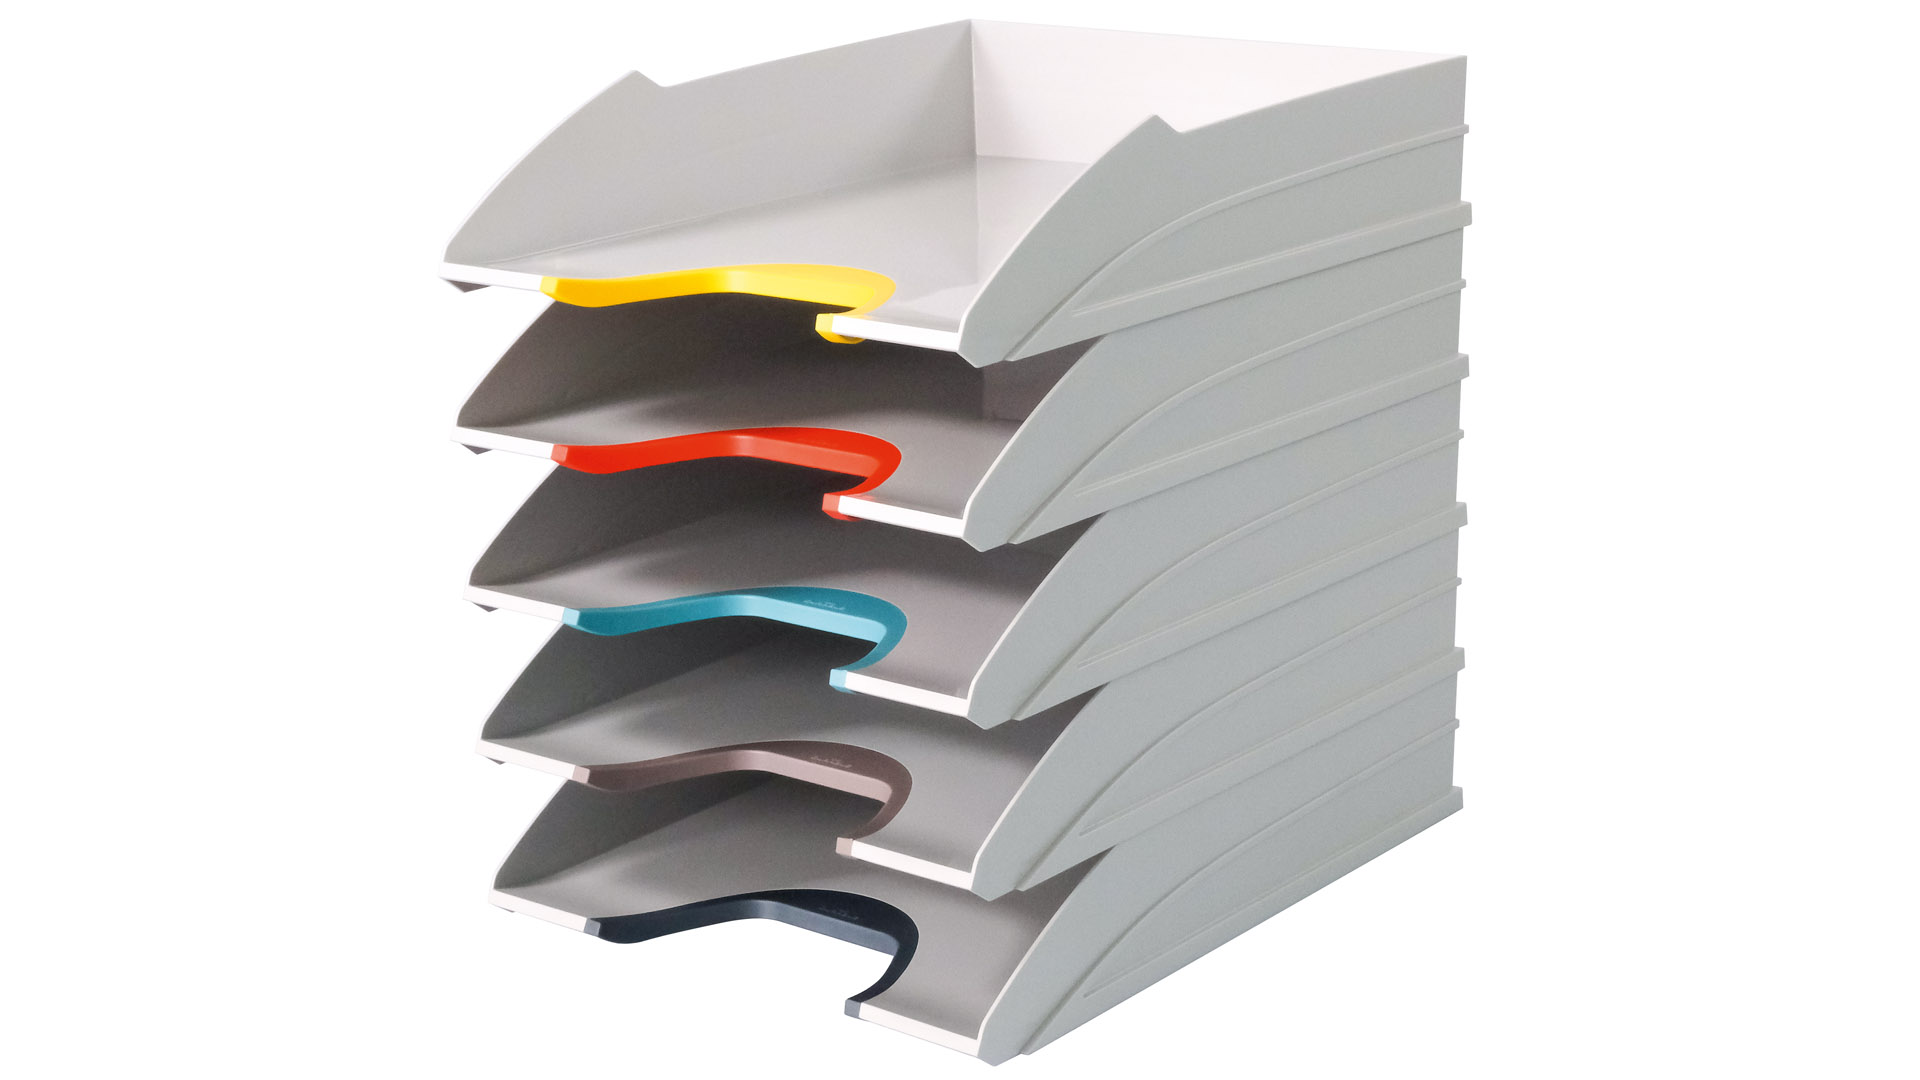 Briefablageschalen, weiß mit verschiedenfarbigen Greifzonen, stapelbar, VE 5 Stück